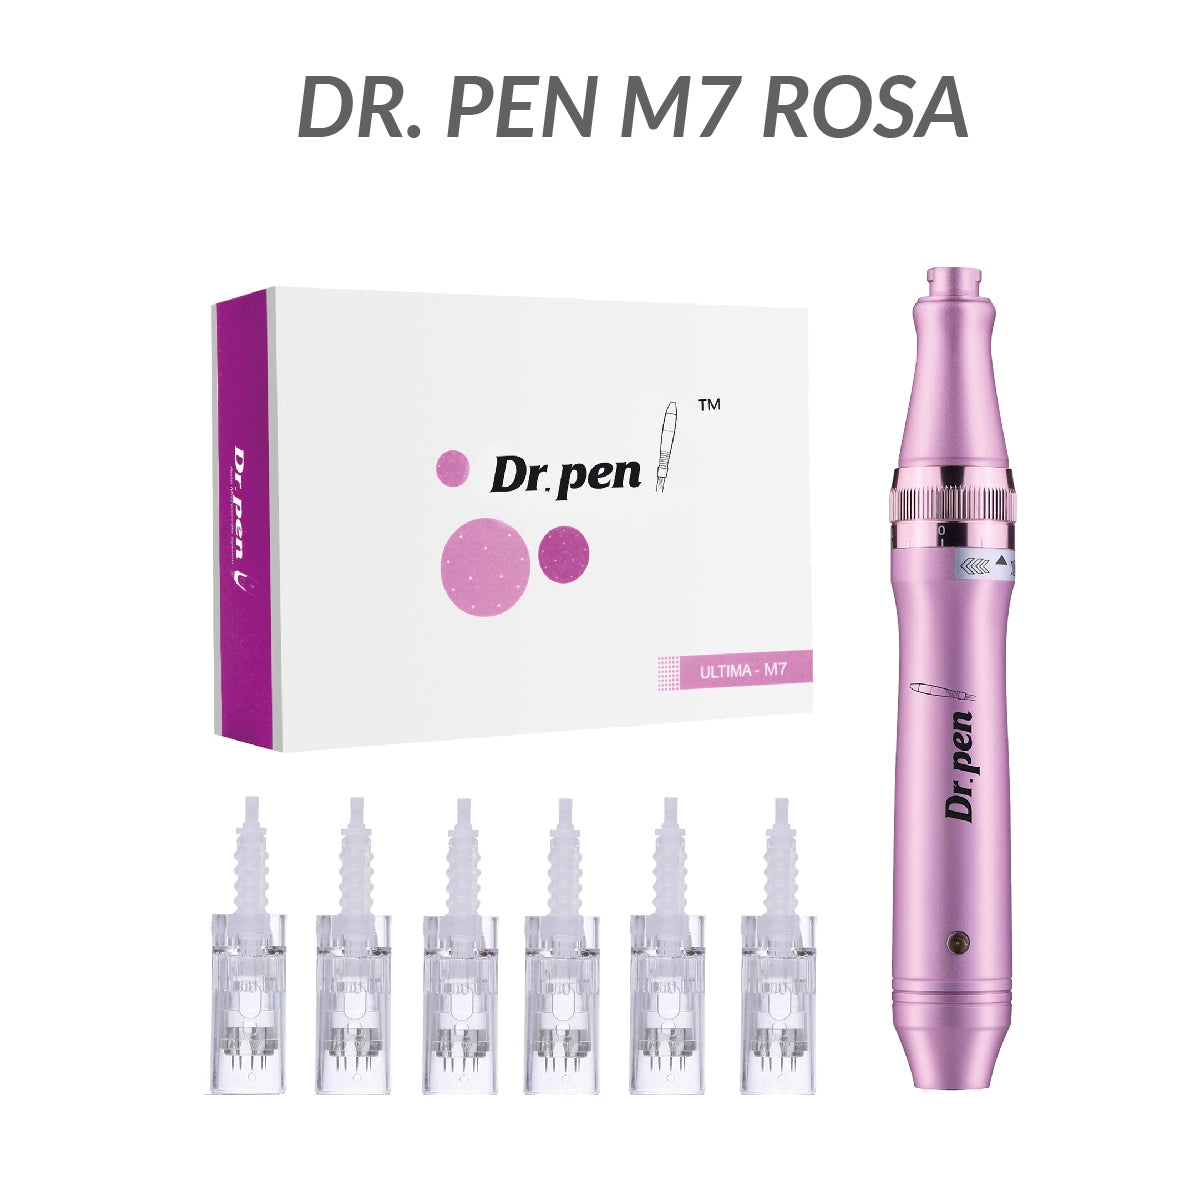 Dr. Pen M7 Rosa